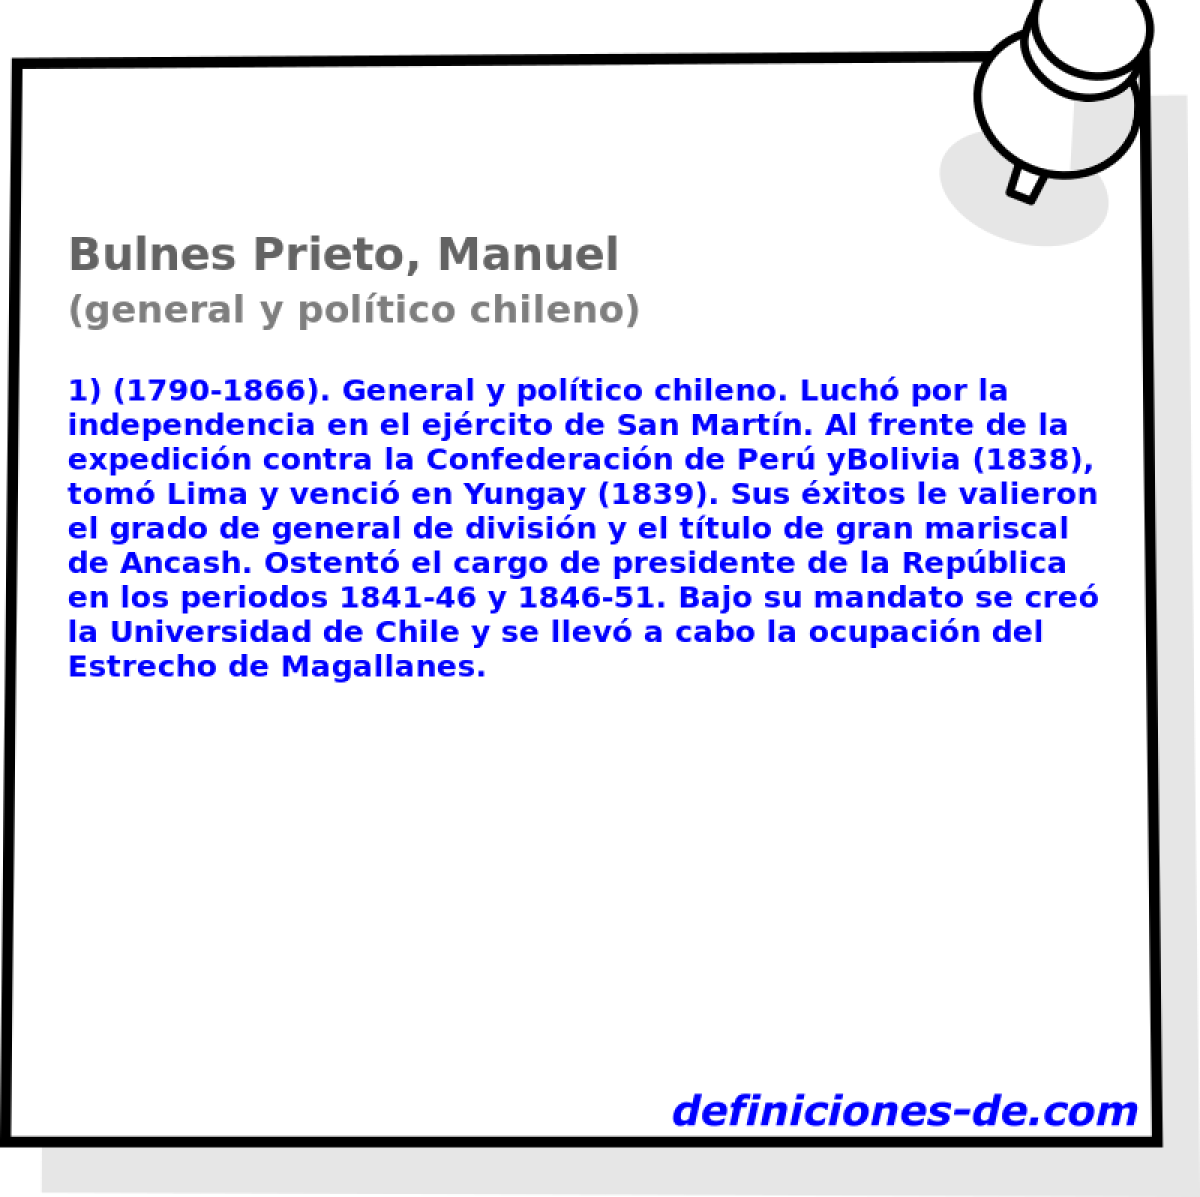 Bulnes Prieto, Manuel (general y poltico chileno)